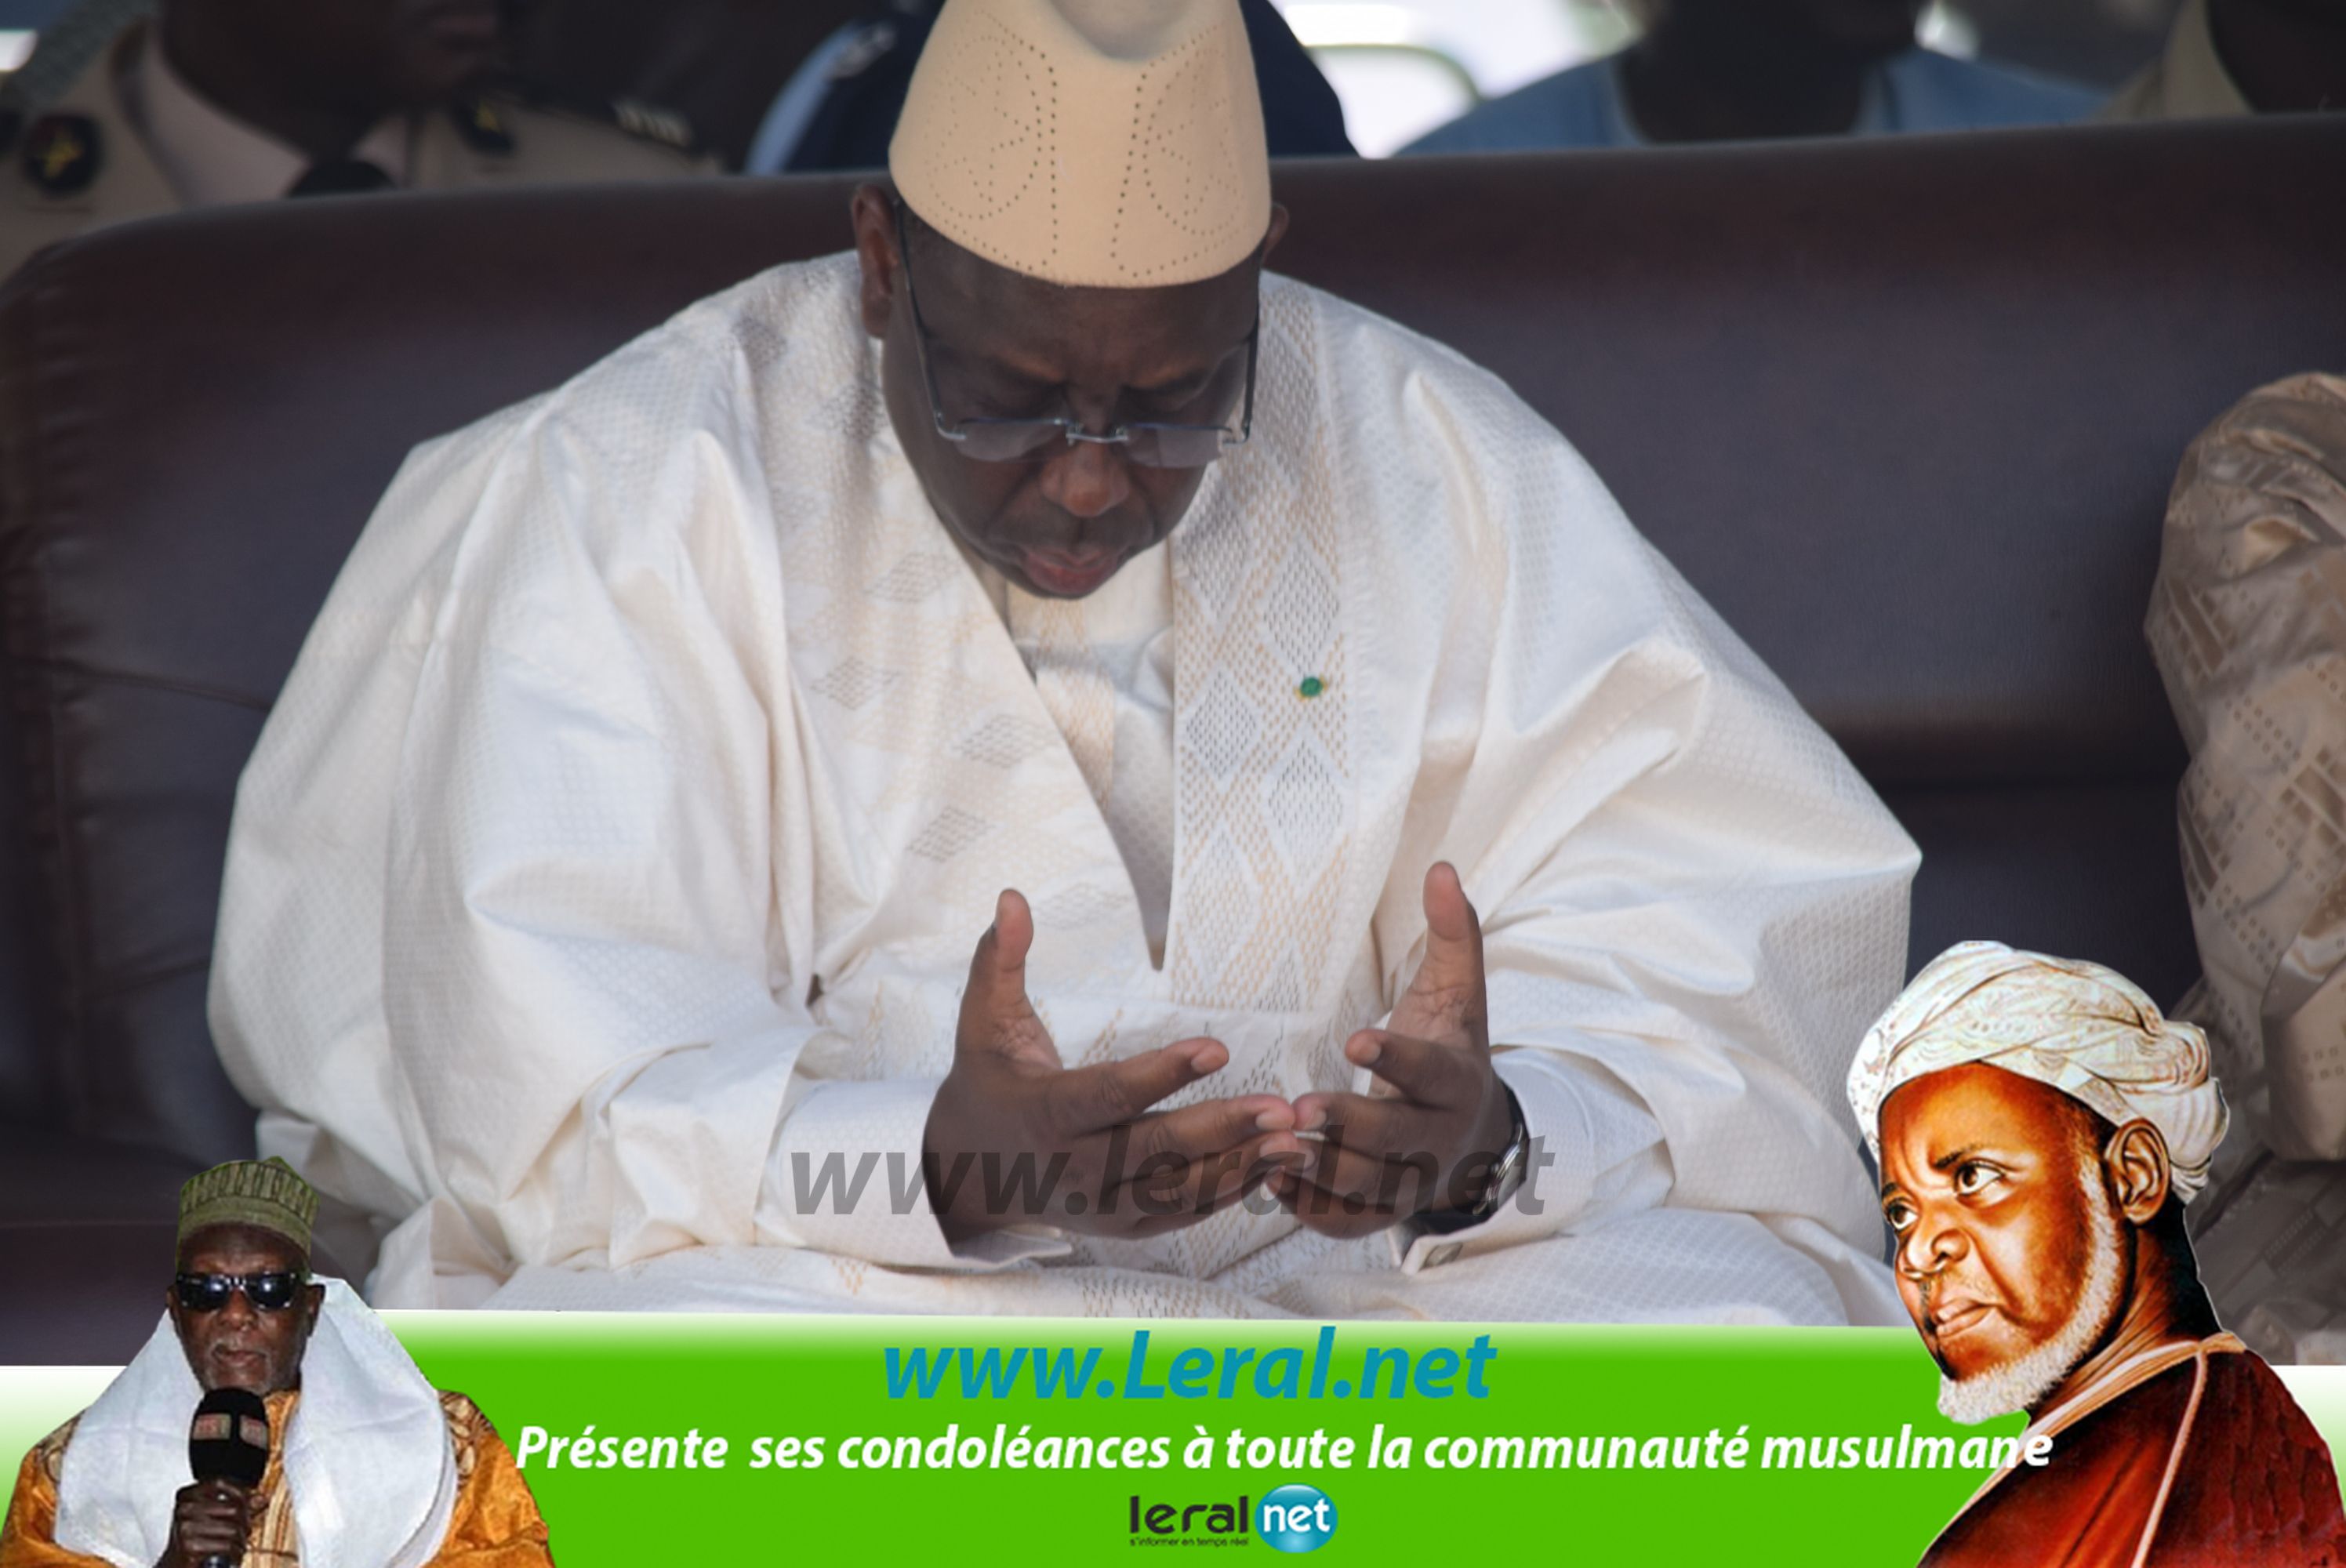 Images: Le Président de la République à Leona Niassene pour présenter ses condoléances